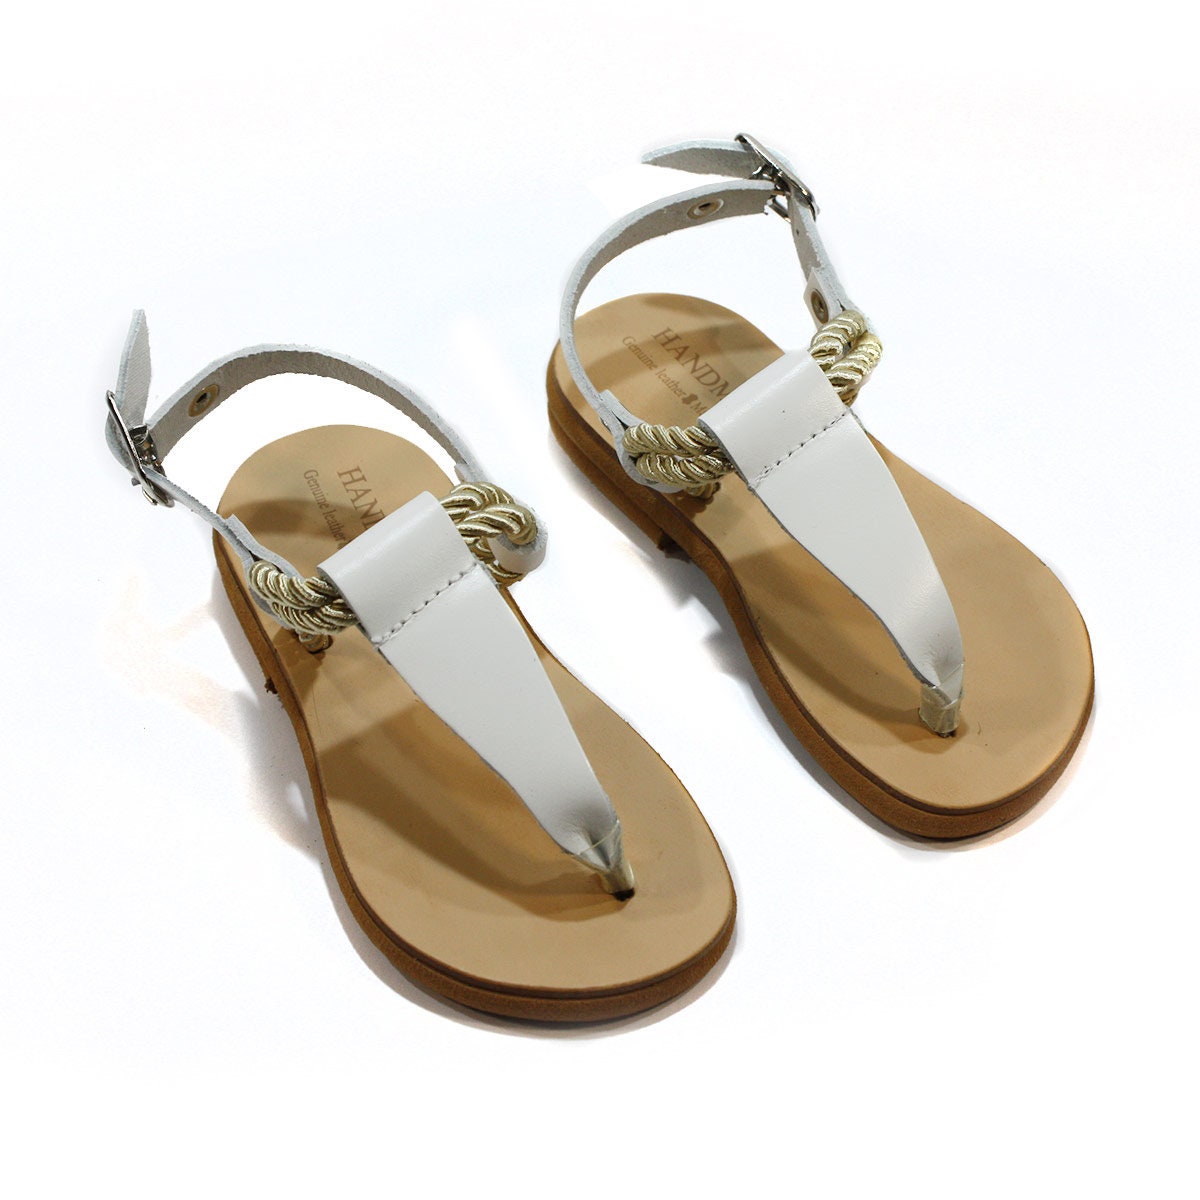 Leather Handmade Greek Sandals for Kids/baby Girl Summer - Etsy